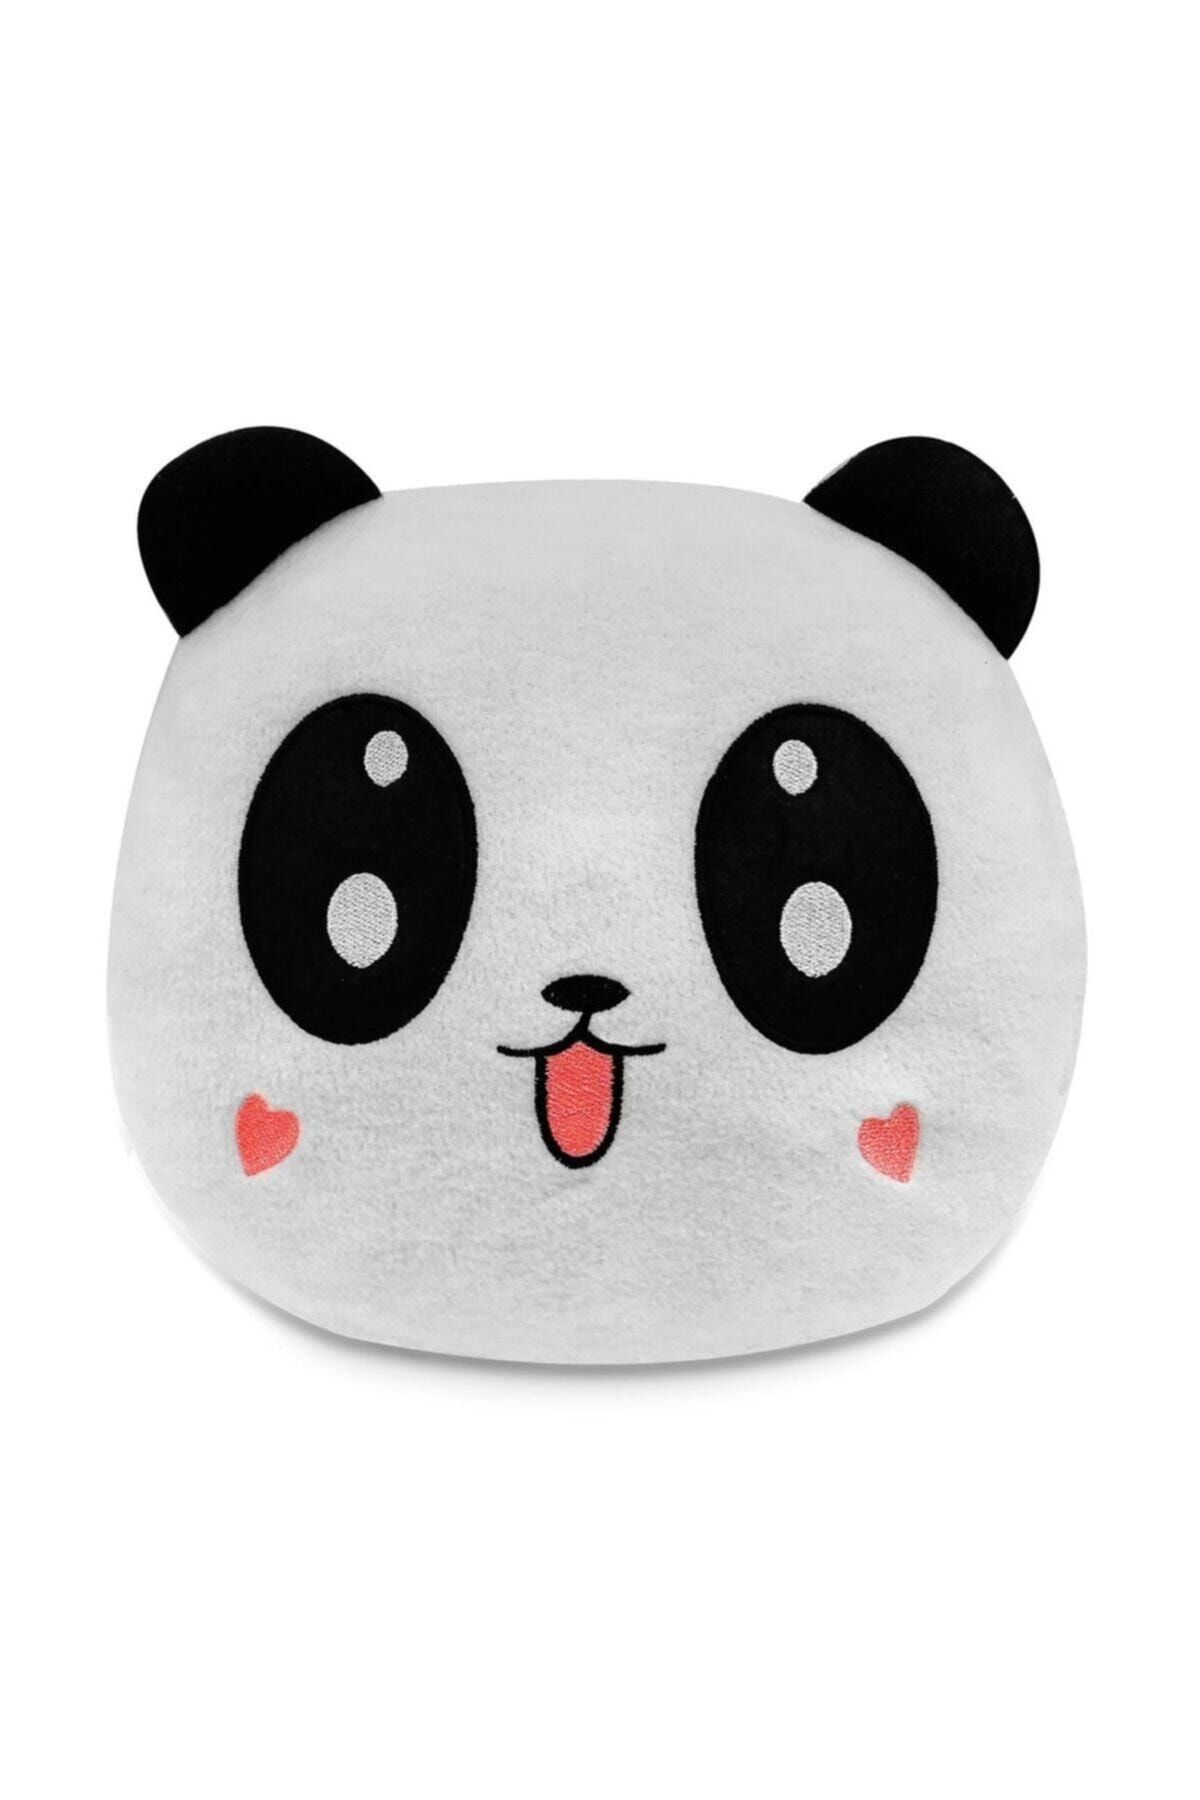 LIME CASES Sevimli Panda Yastık Beyaz Pandalı Yastık Peluş Yumuşak Yastık